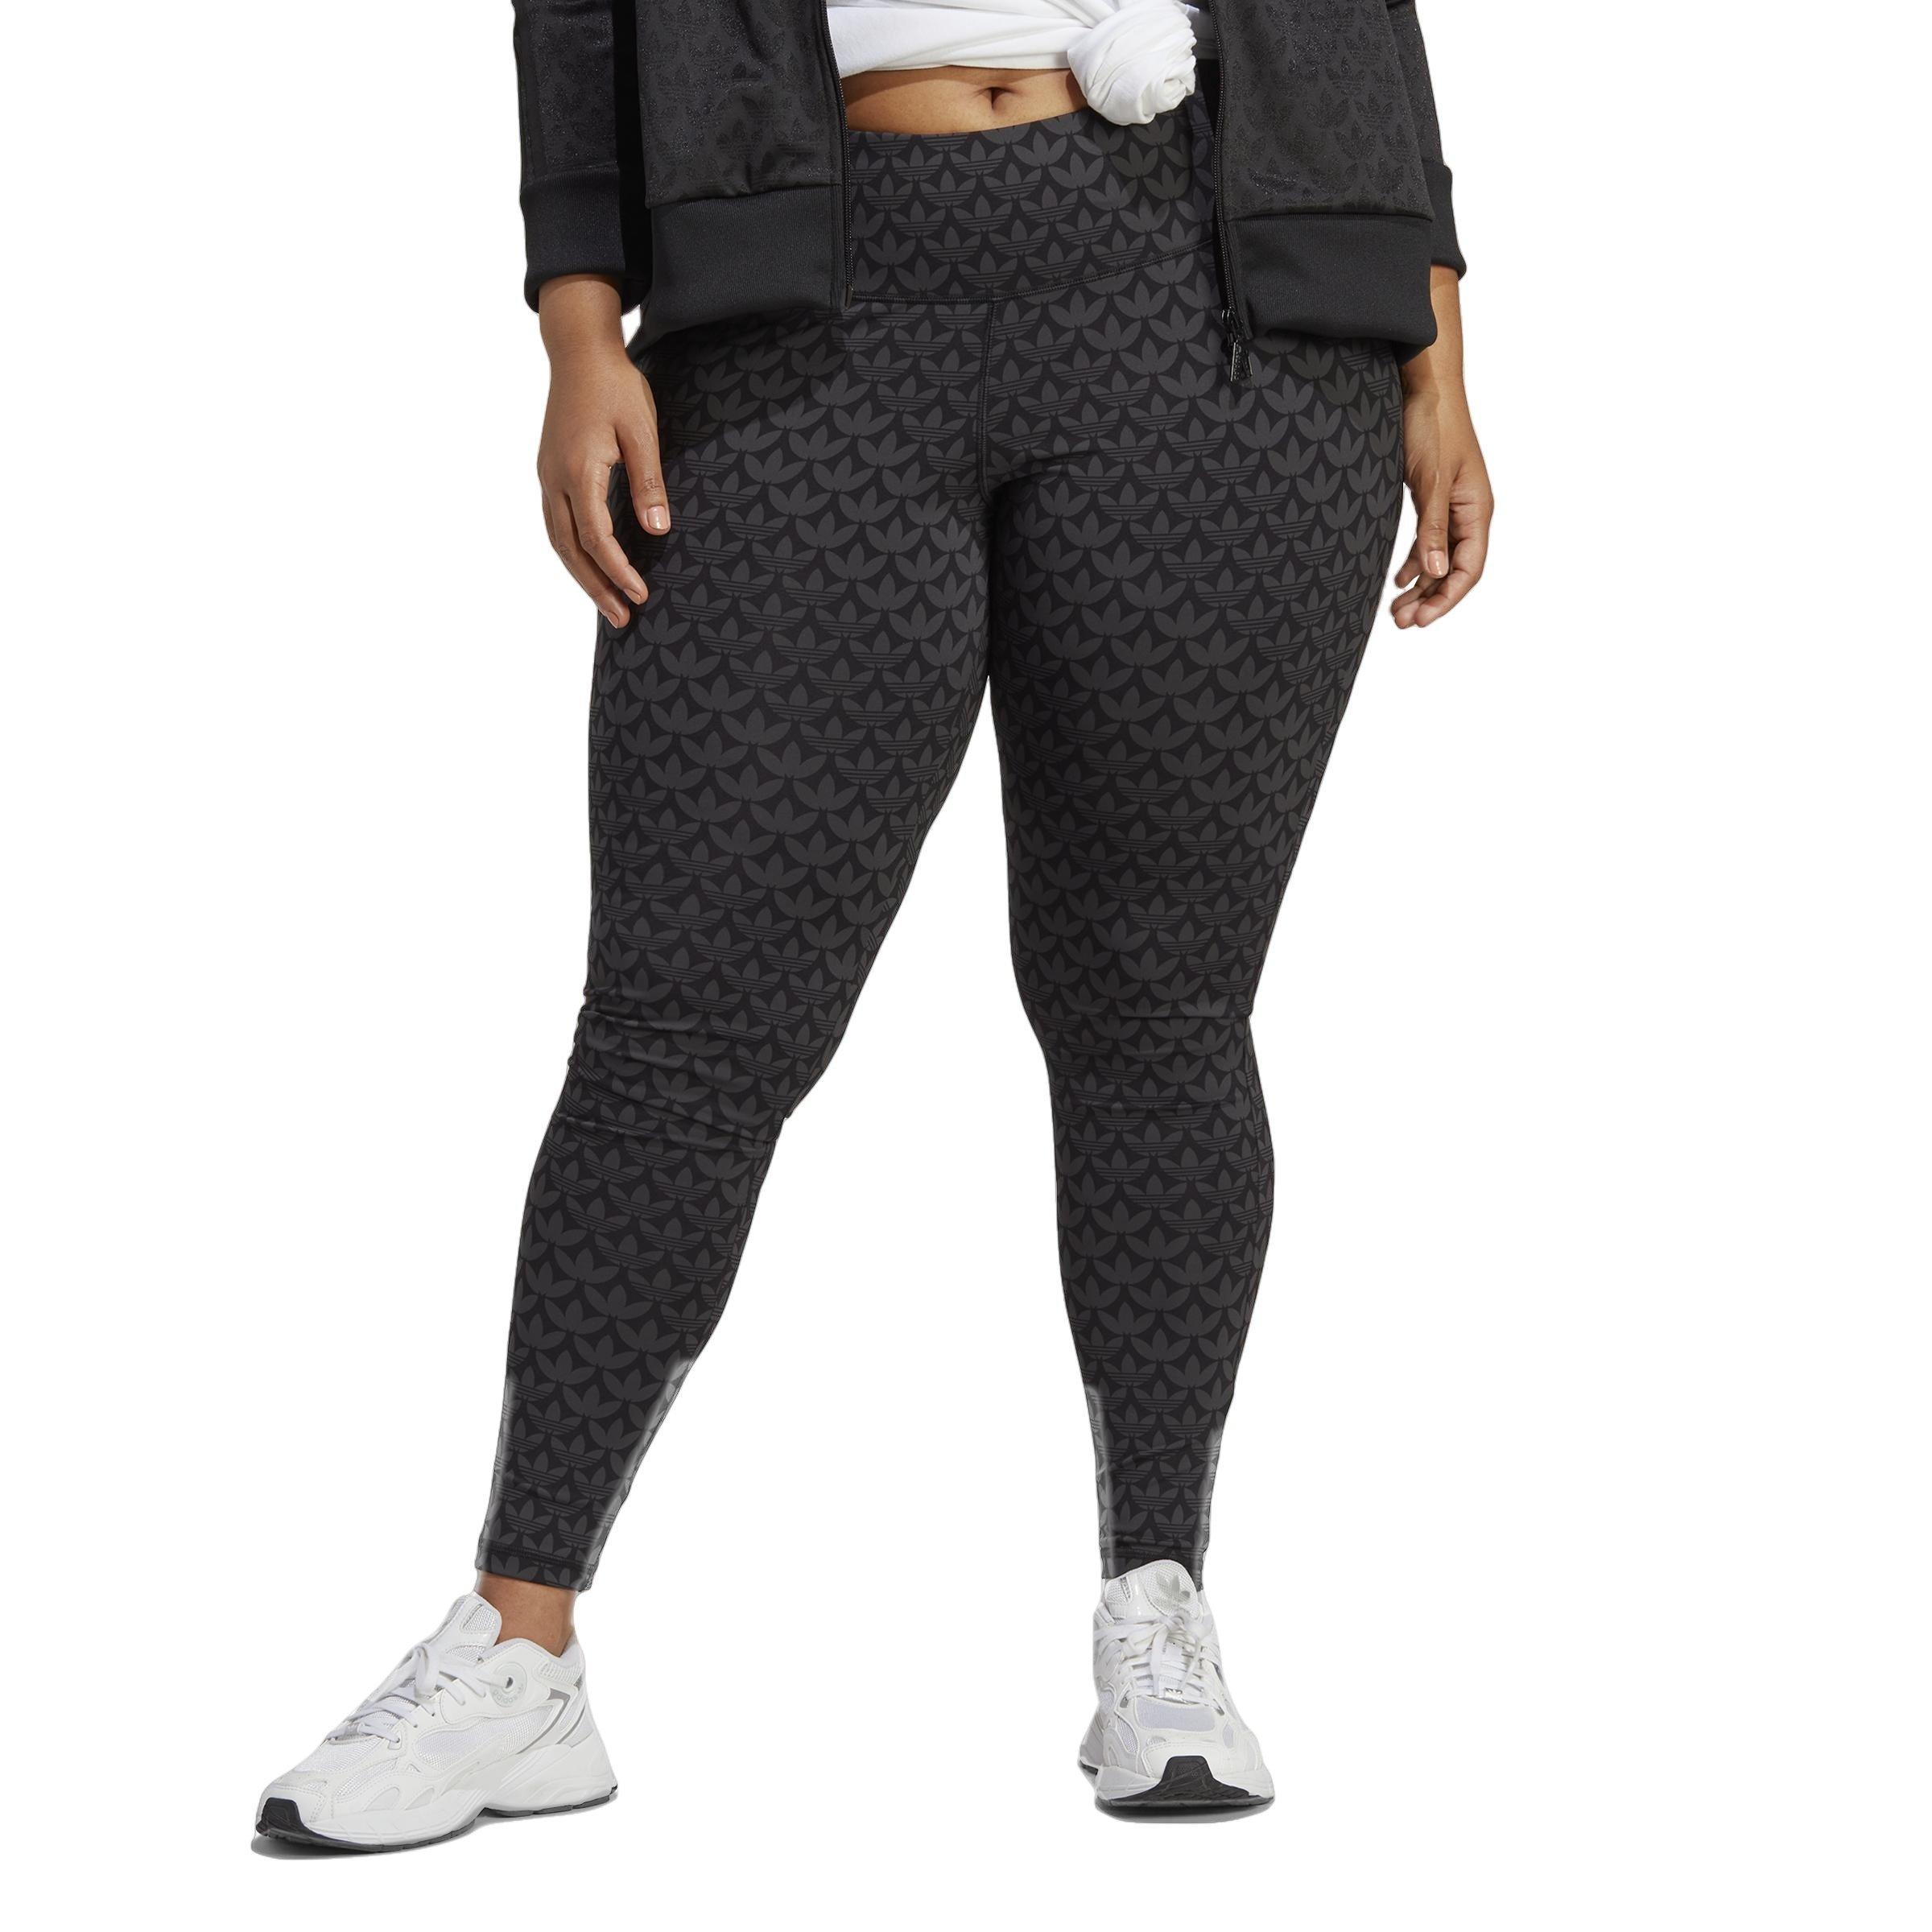 Size Large Adidas Black Women's Leggings - Janky Gear